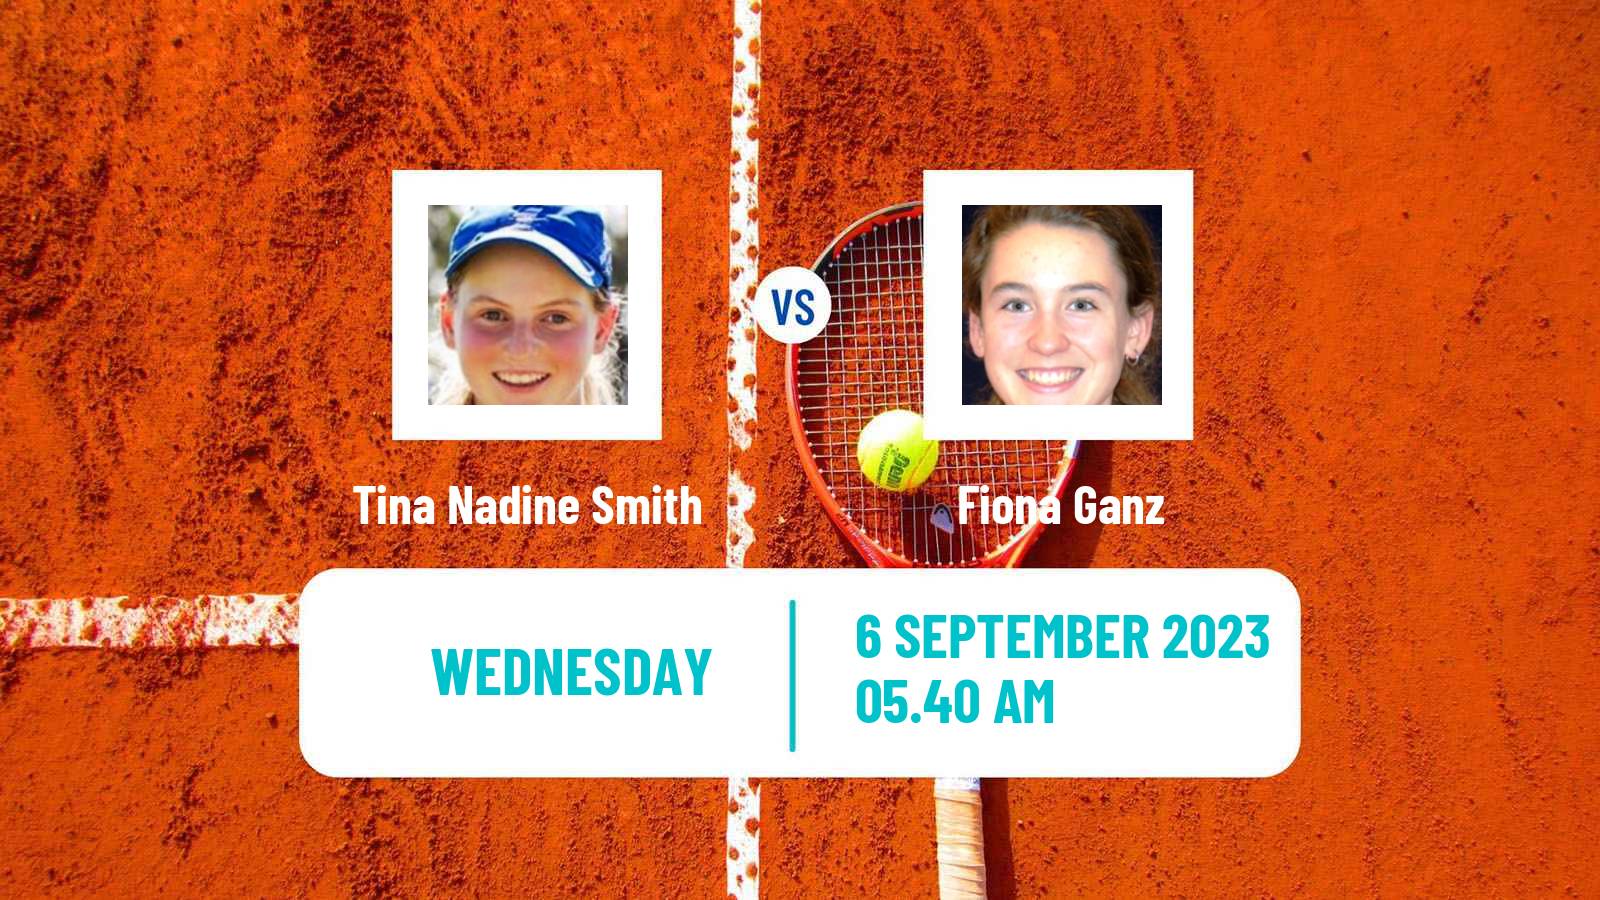 Tennis ITF W60 Montreux Women Tina Nadine Smith - Fiona Ganz